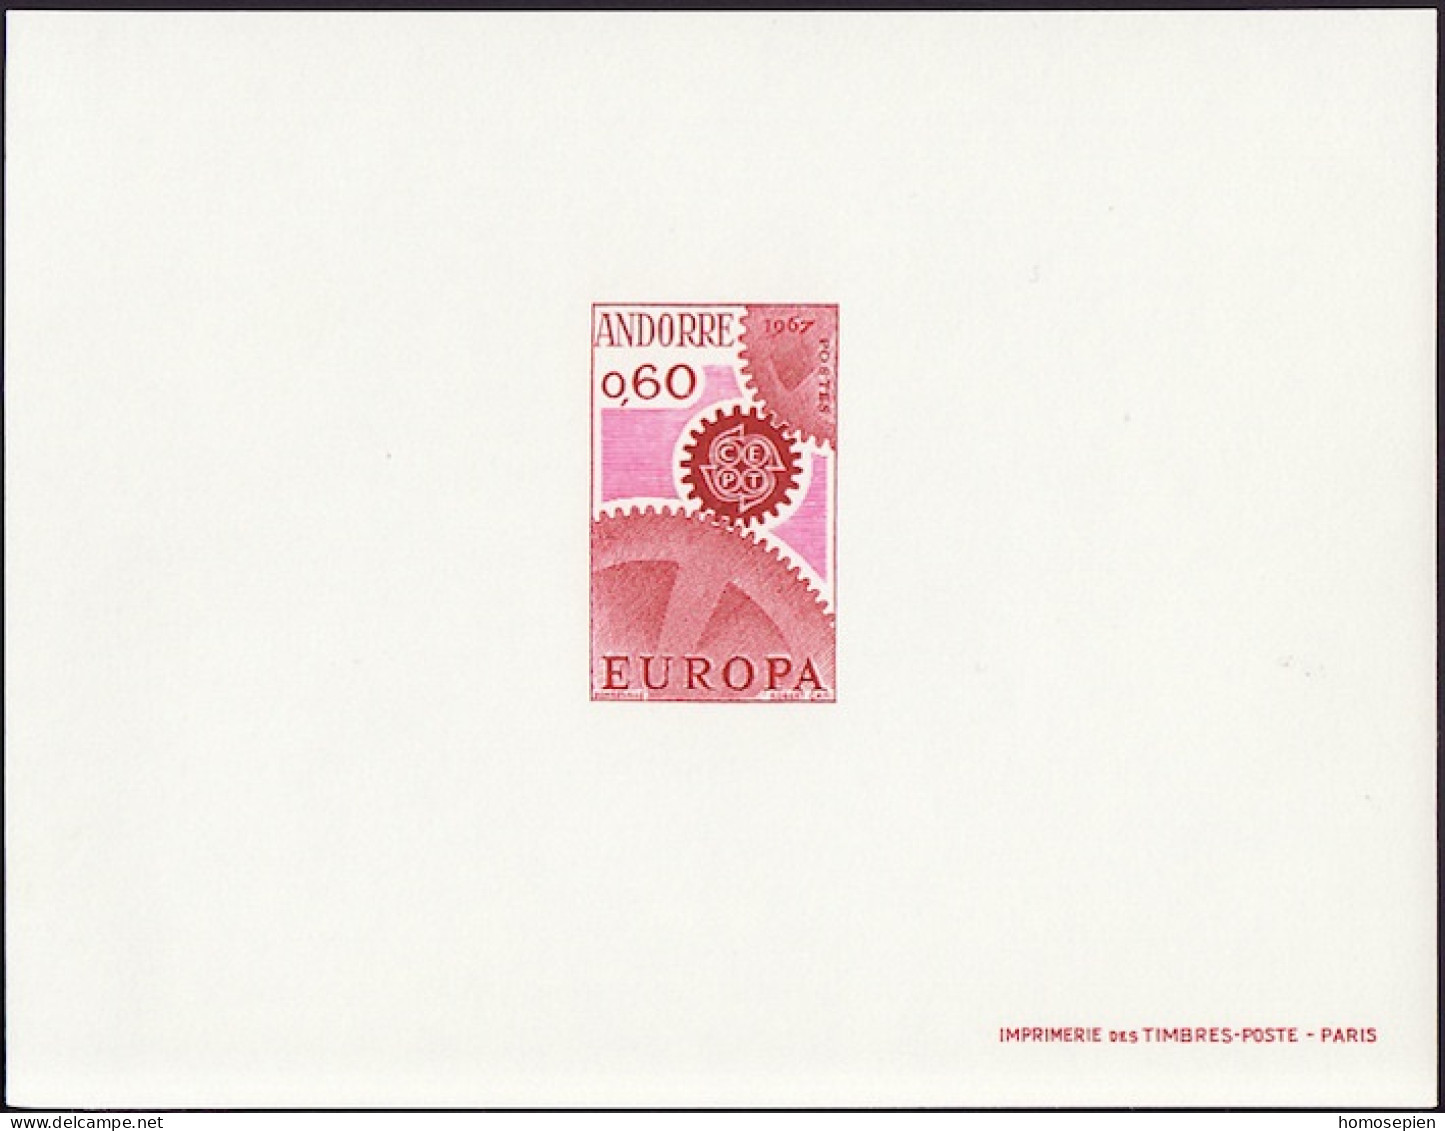 Andorre Français - Andorra épreuve 1967 Y&T N°EL180 - Michel N°DP200 *** - 60c EUROPA - Briefe U. Dokumente